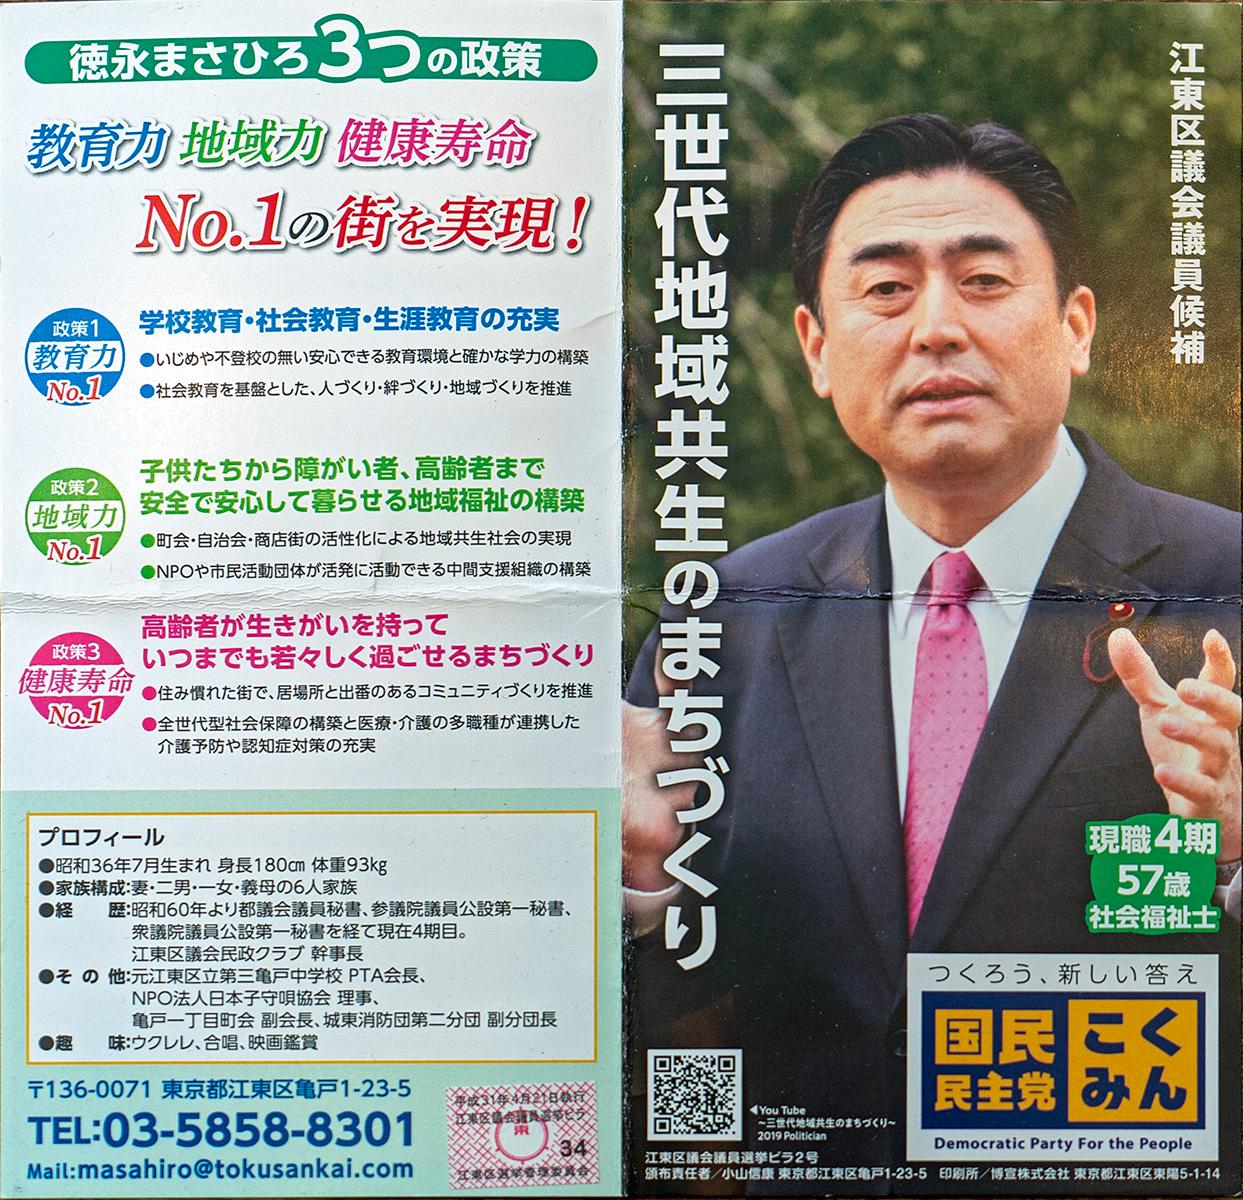 Eine Parteiinfo der DDP bei bei den Einheitlichen Regionalwahlen in Tokio, Japan, 2019